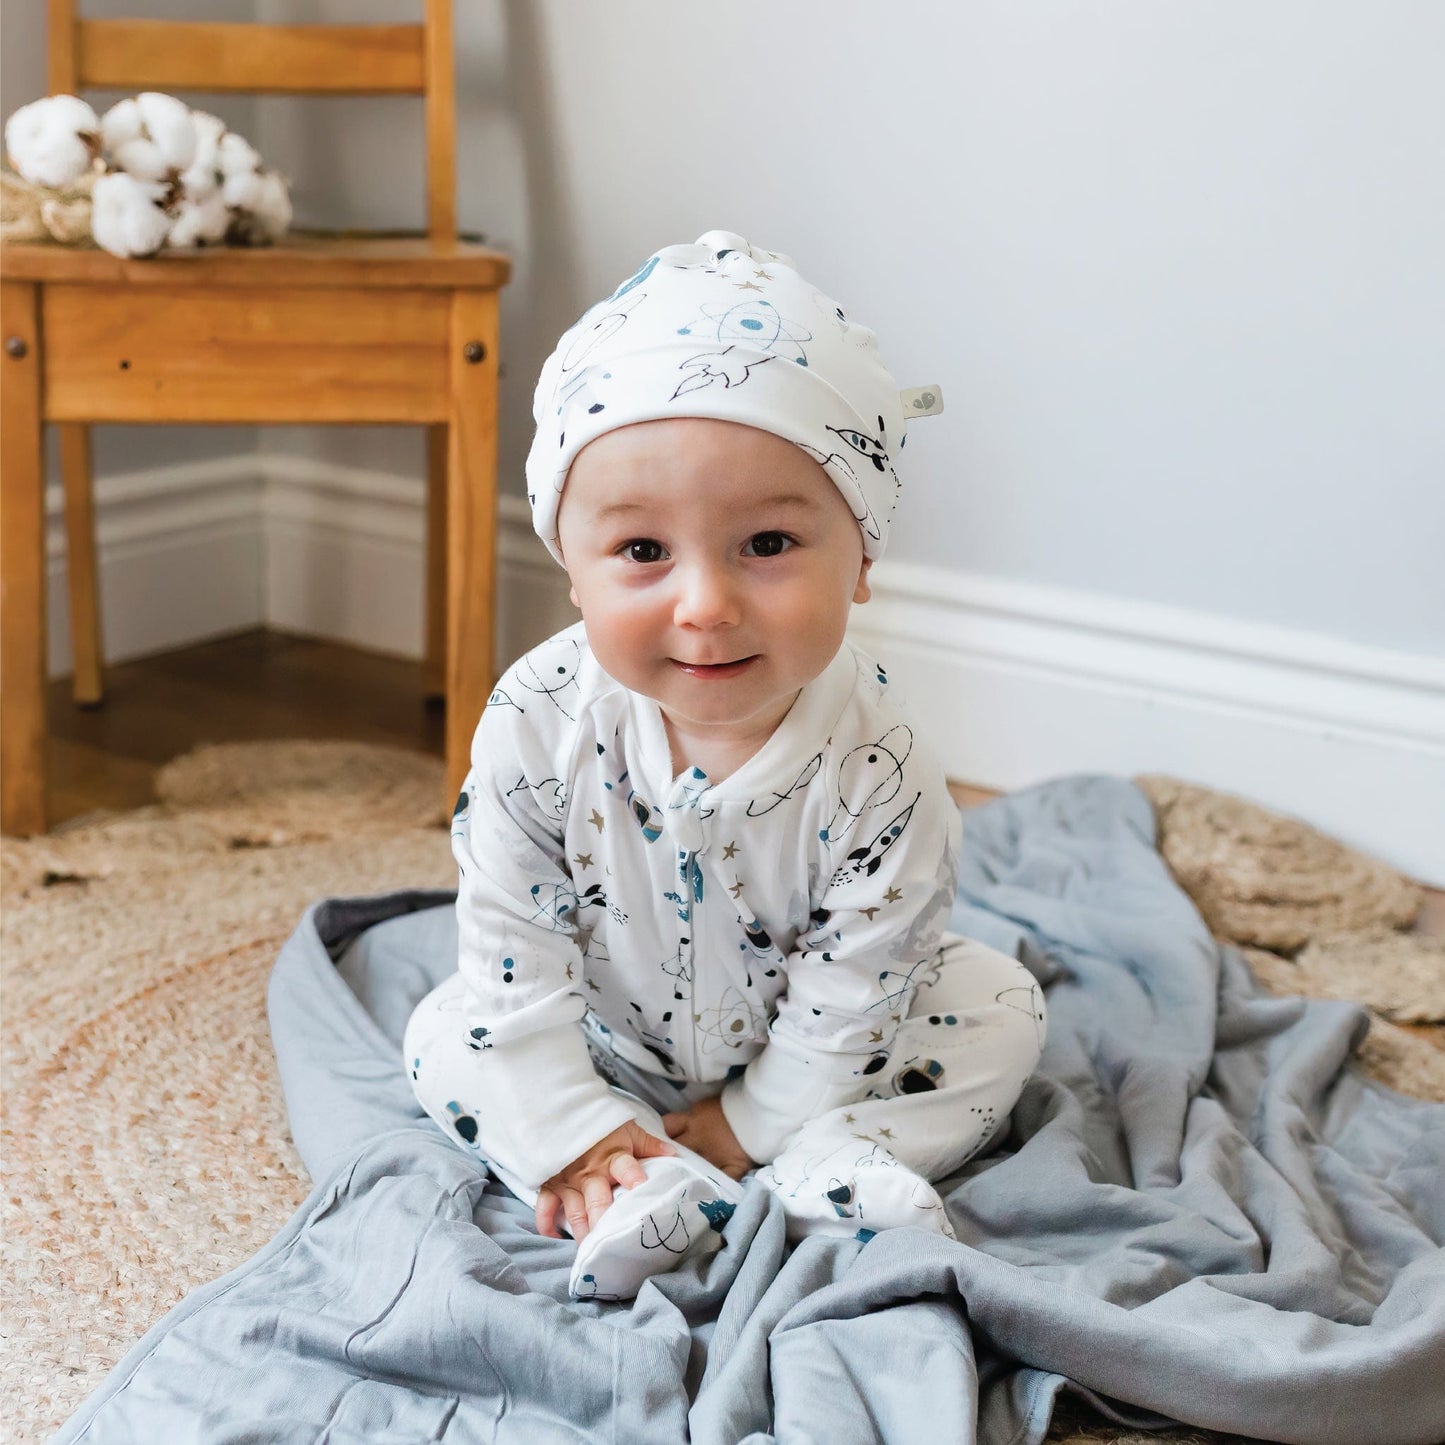 Pyjama pour bébé en bambou - Espace